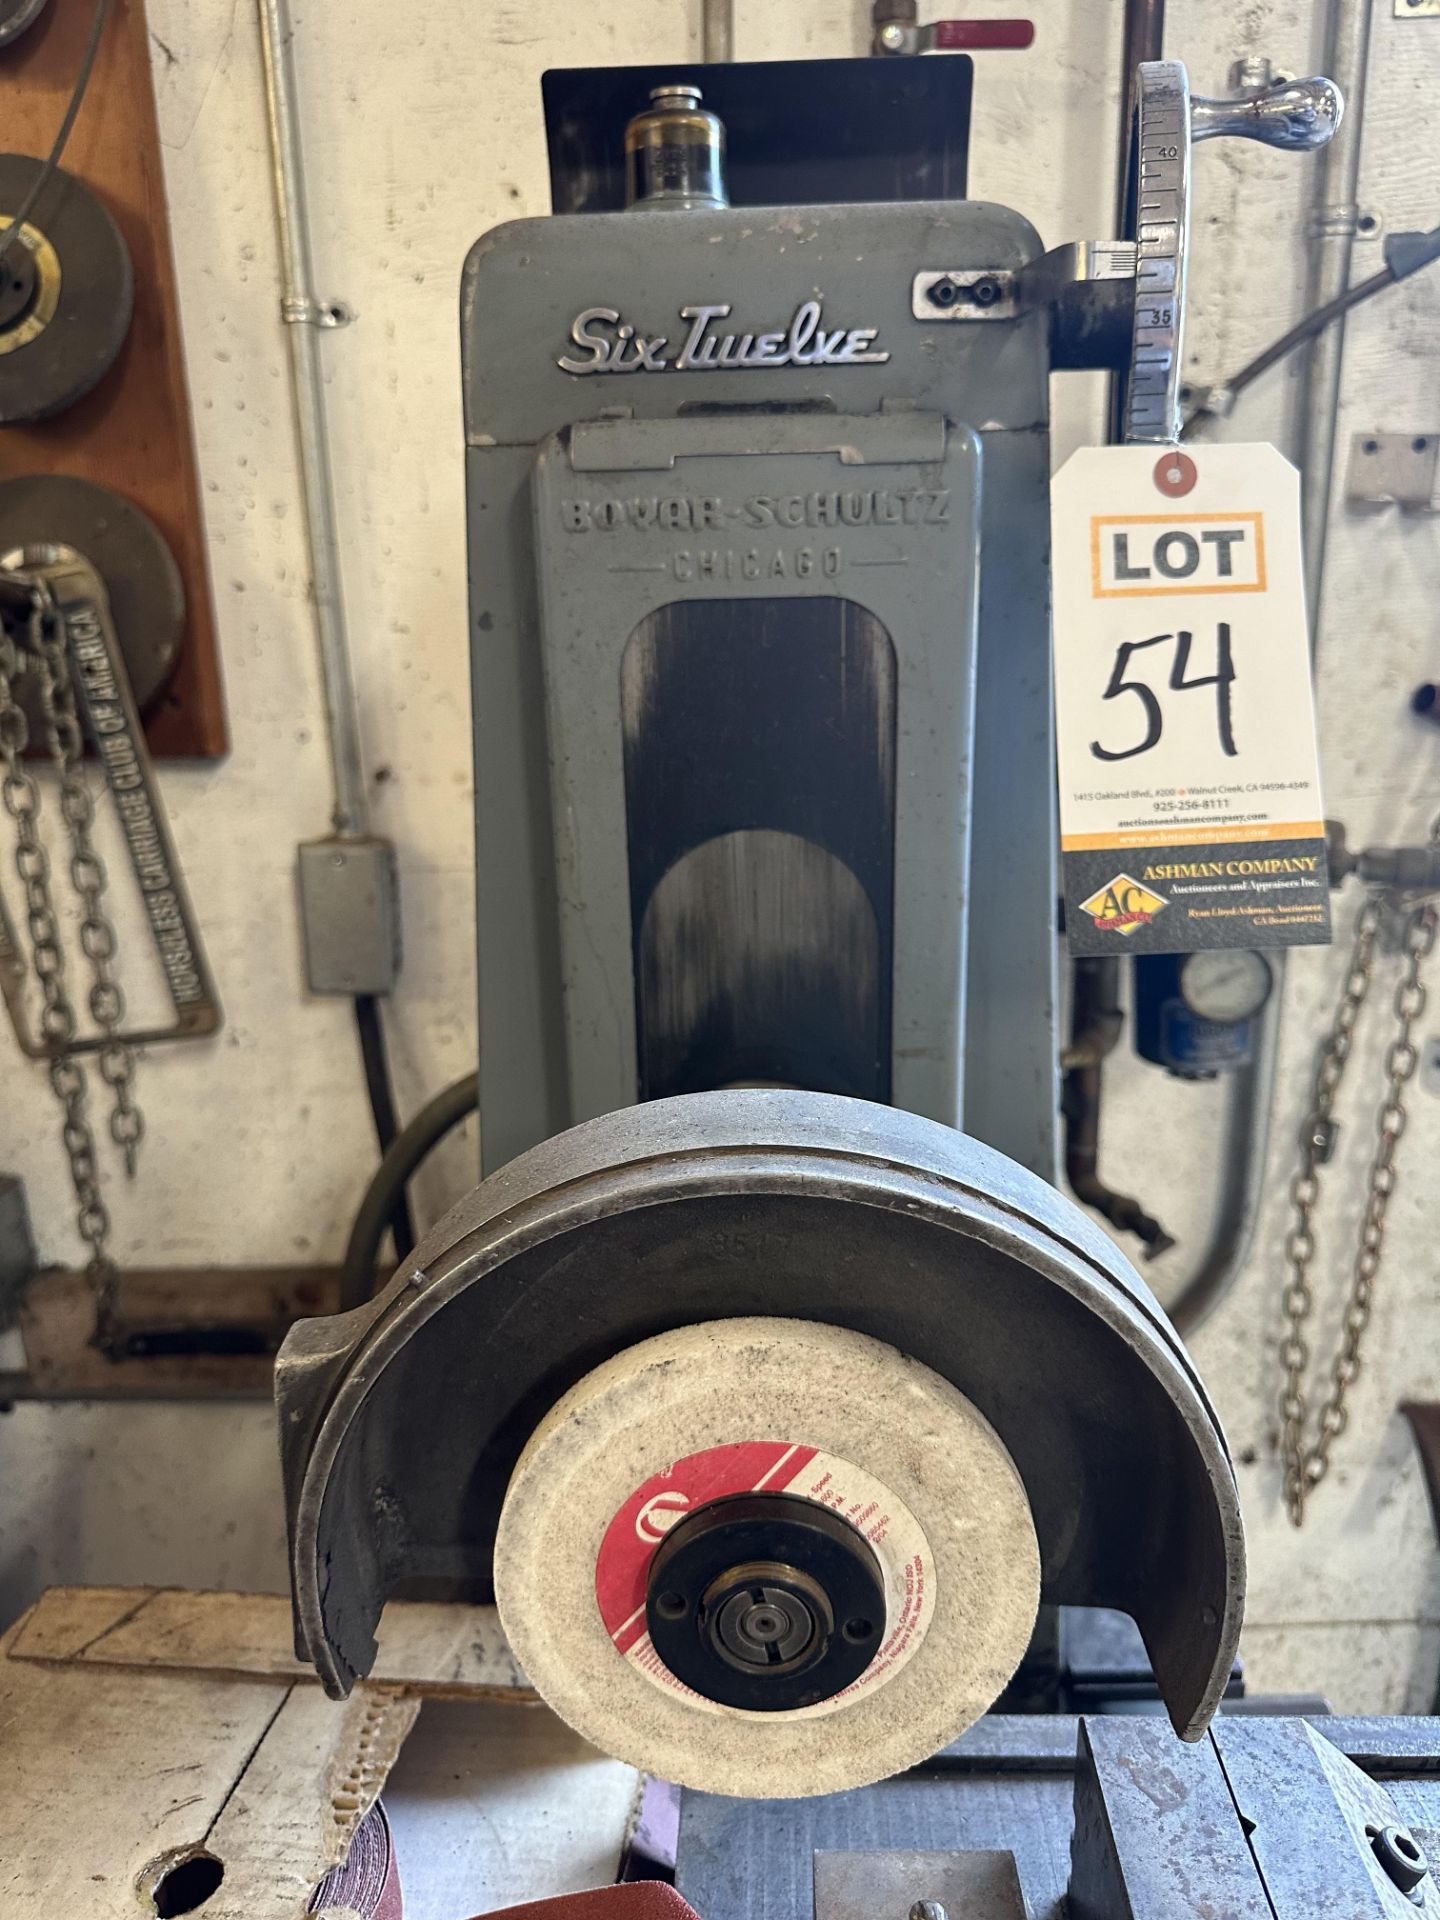 Boyer Schultz surface grinder